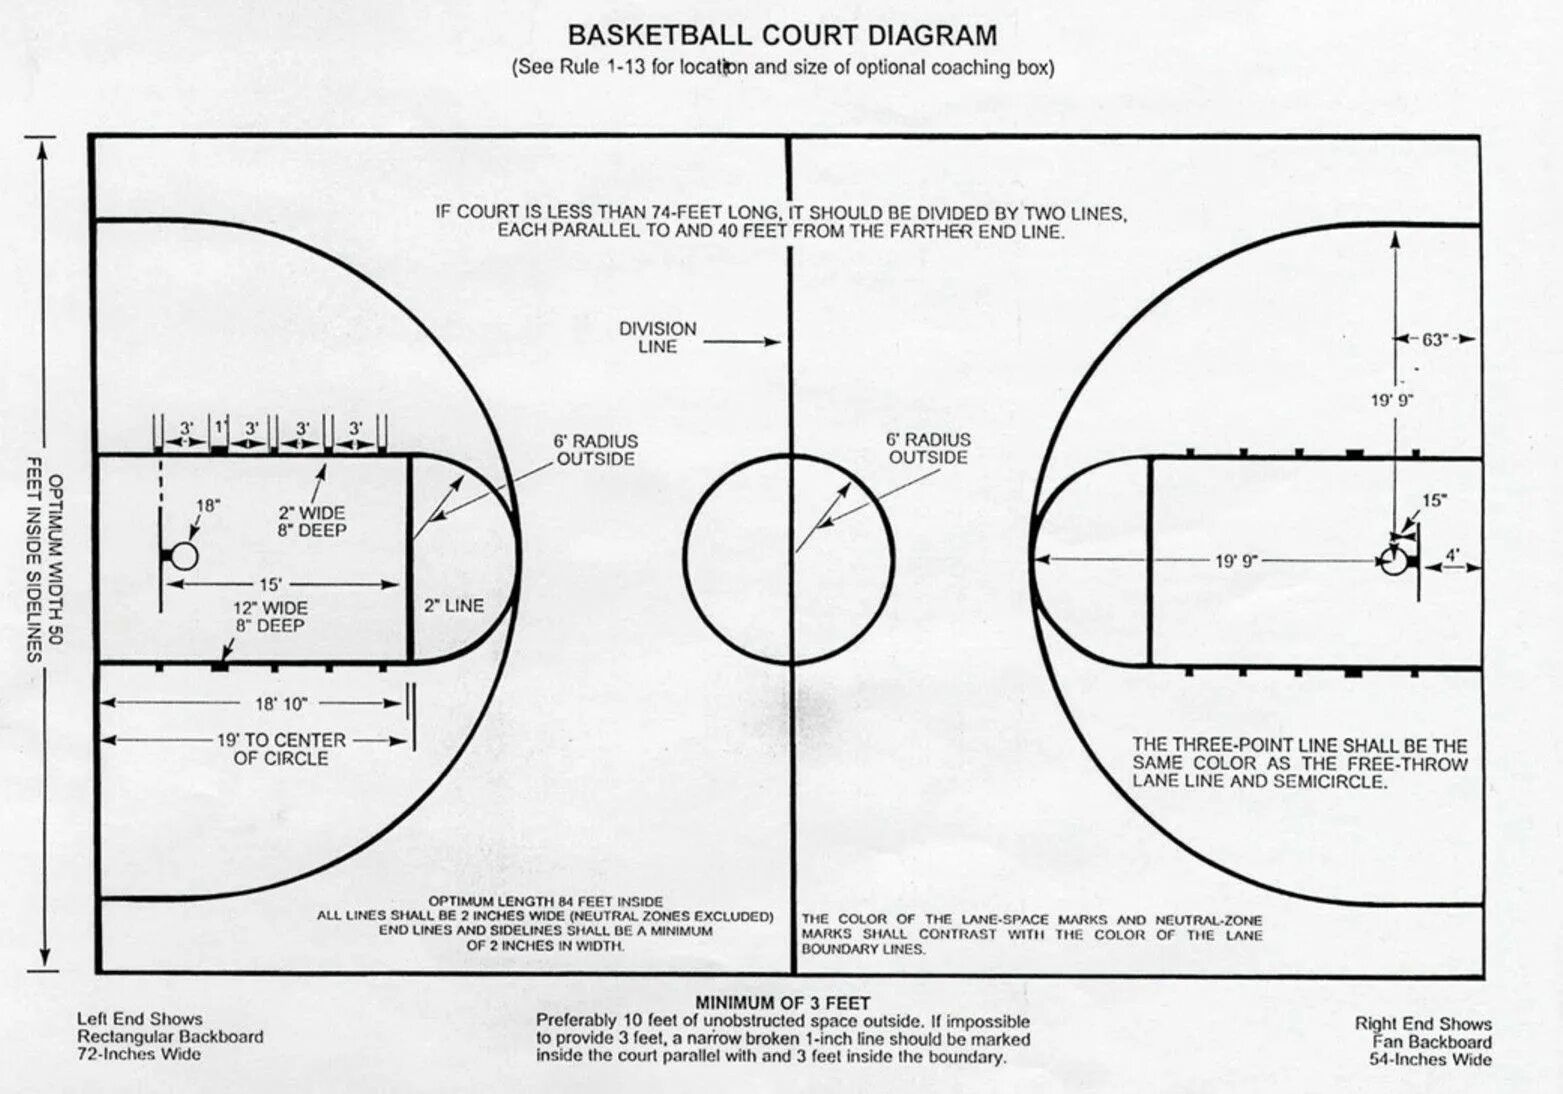 Центральный круг в баскетболе. 3 Очковая линия в баскетболе. Трехсекундная зона в баскетболе. 3 Очковая зона в баскетболе. Линия 3х очкового броска в баскетболе.